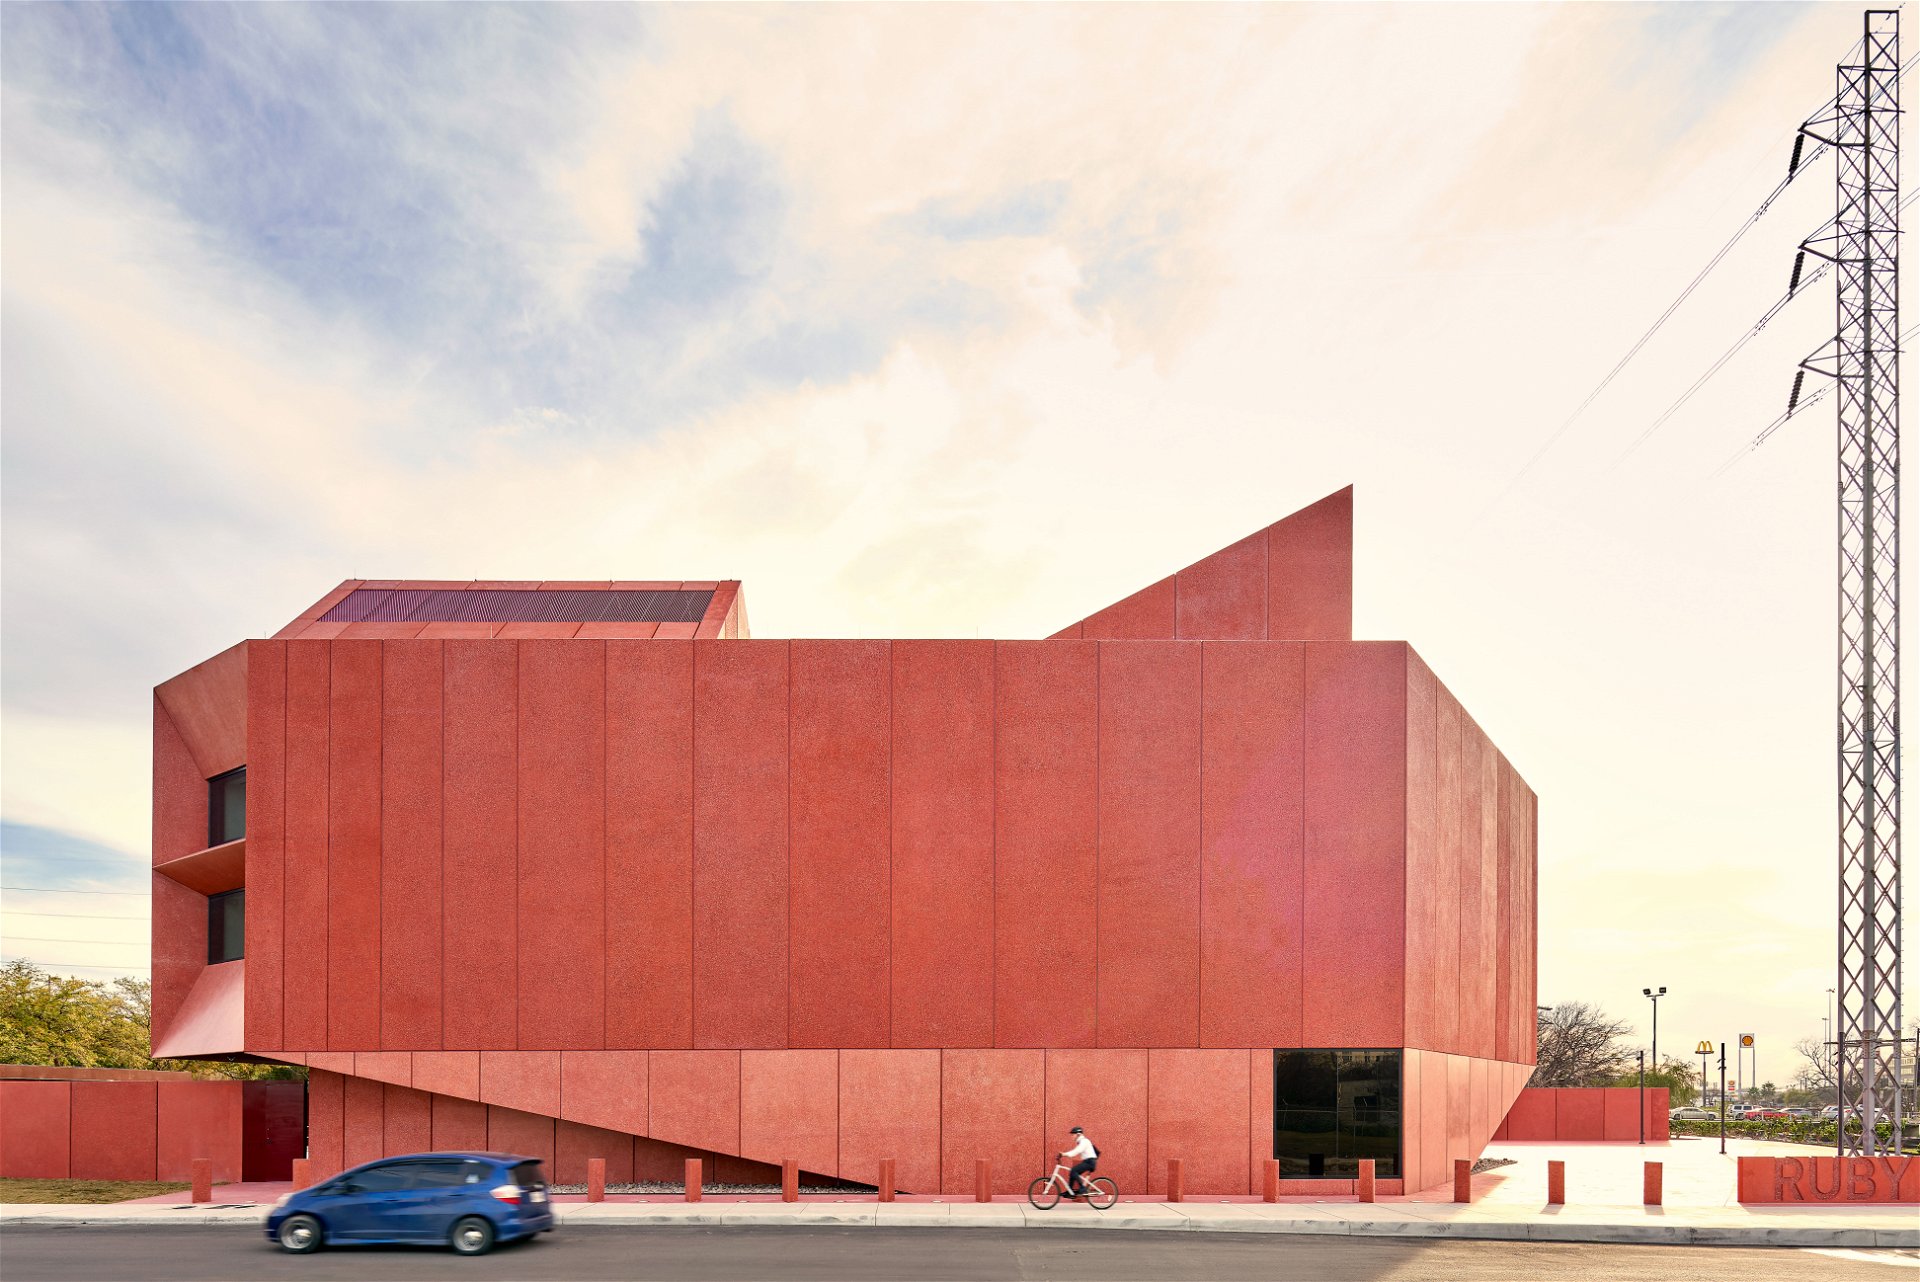 Wüsten-Rot: Die scharfkantige Form des Ruby City Art Center in San Antonio, Texas, steht mit seiner feurig leuchtenden Farbe in aufregendem Spannungsverhältnis zur örtlichen Architektur.